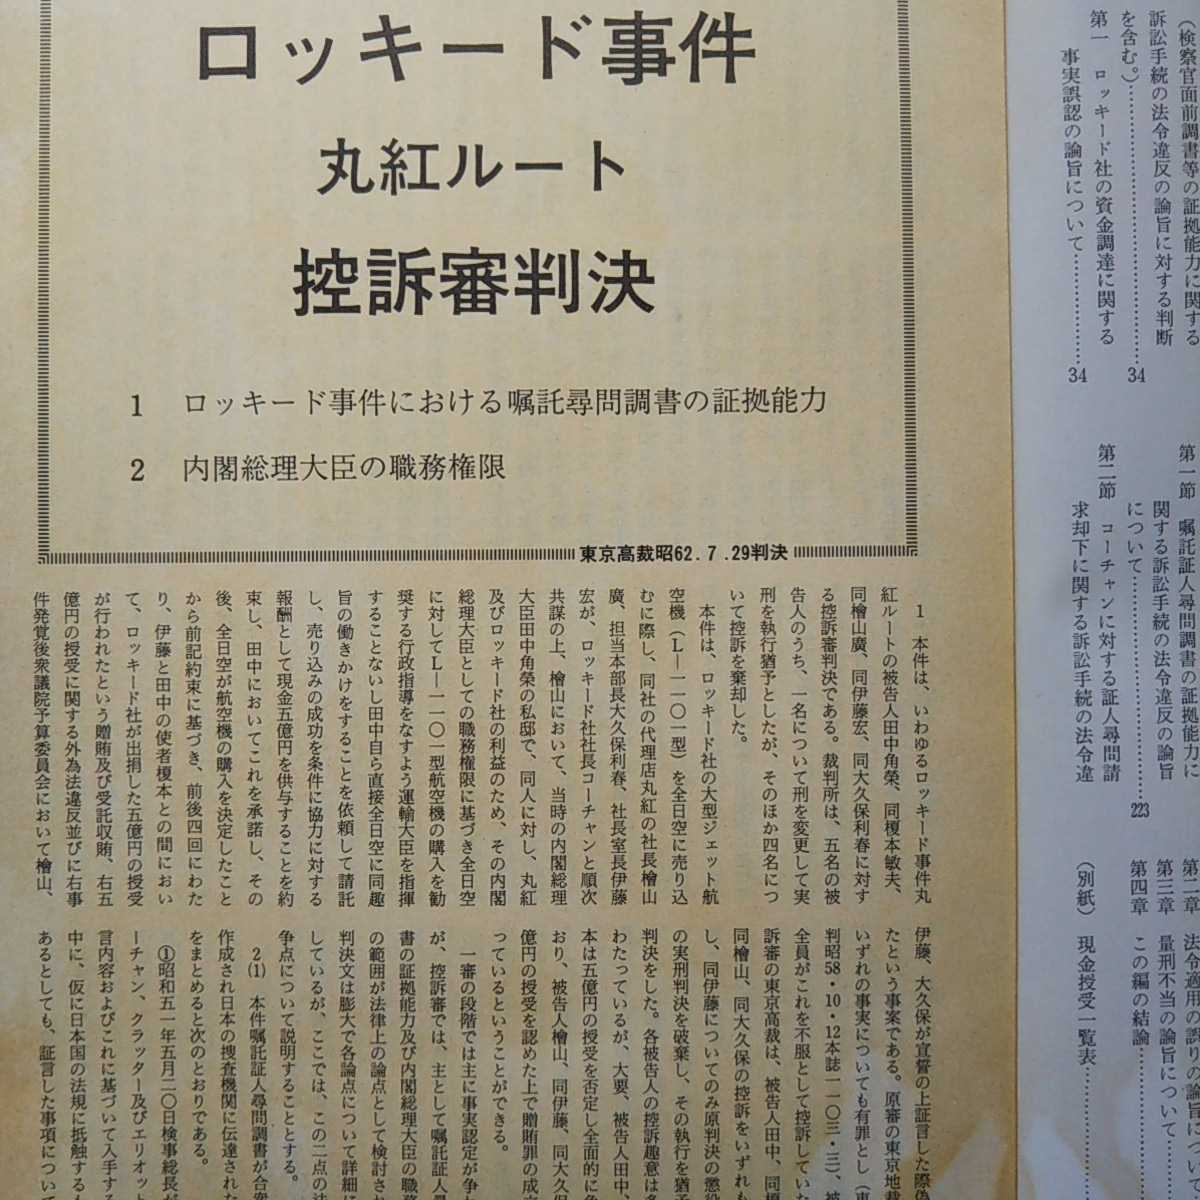 判例時報 No.1257　臨時増刊 昭和63・2・5号 ロッキード（丸紅ルート）事件 控訴審判決 （東京高裁昭62.7.29判決）_3ページは茶変化が強く出ています